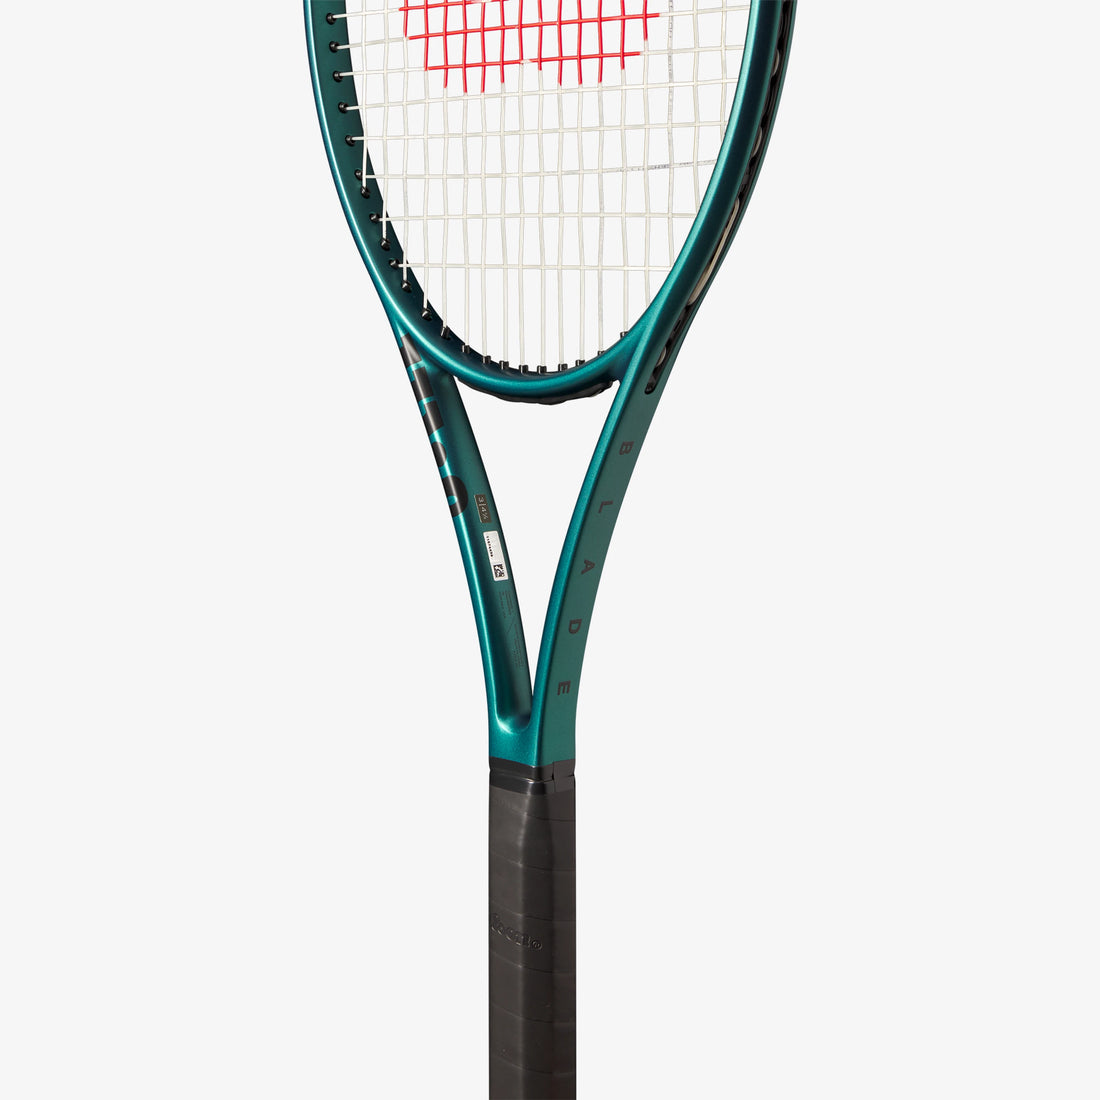 Raqueta de Tenis Wilson BLADE 98 18X20v8 4 3/8 (GRIP 3)